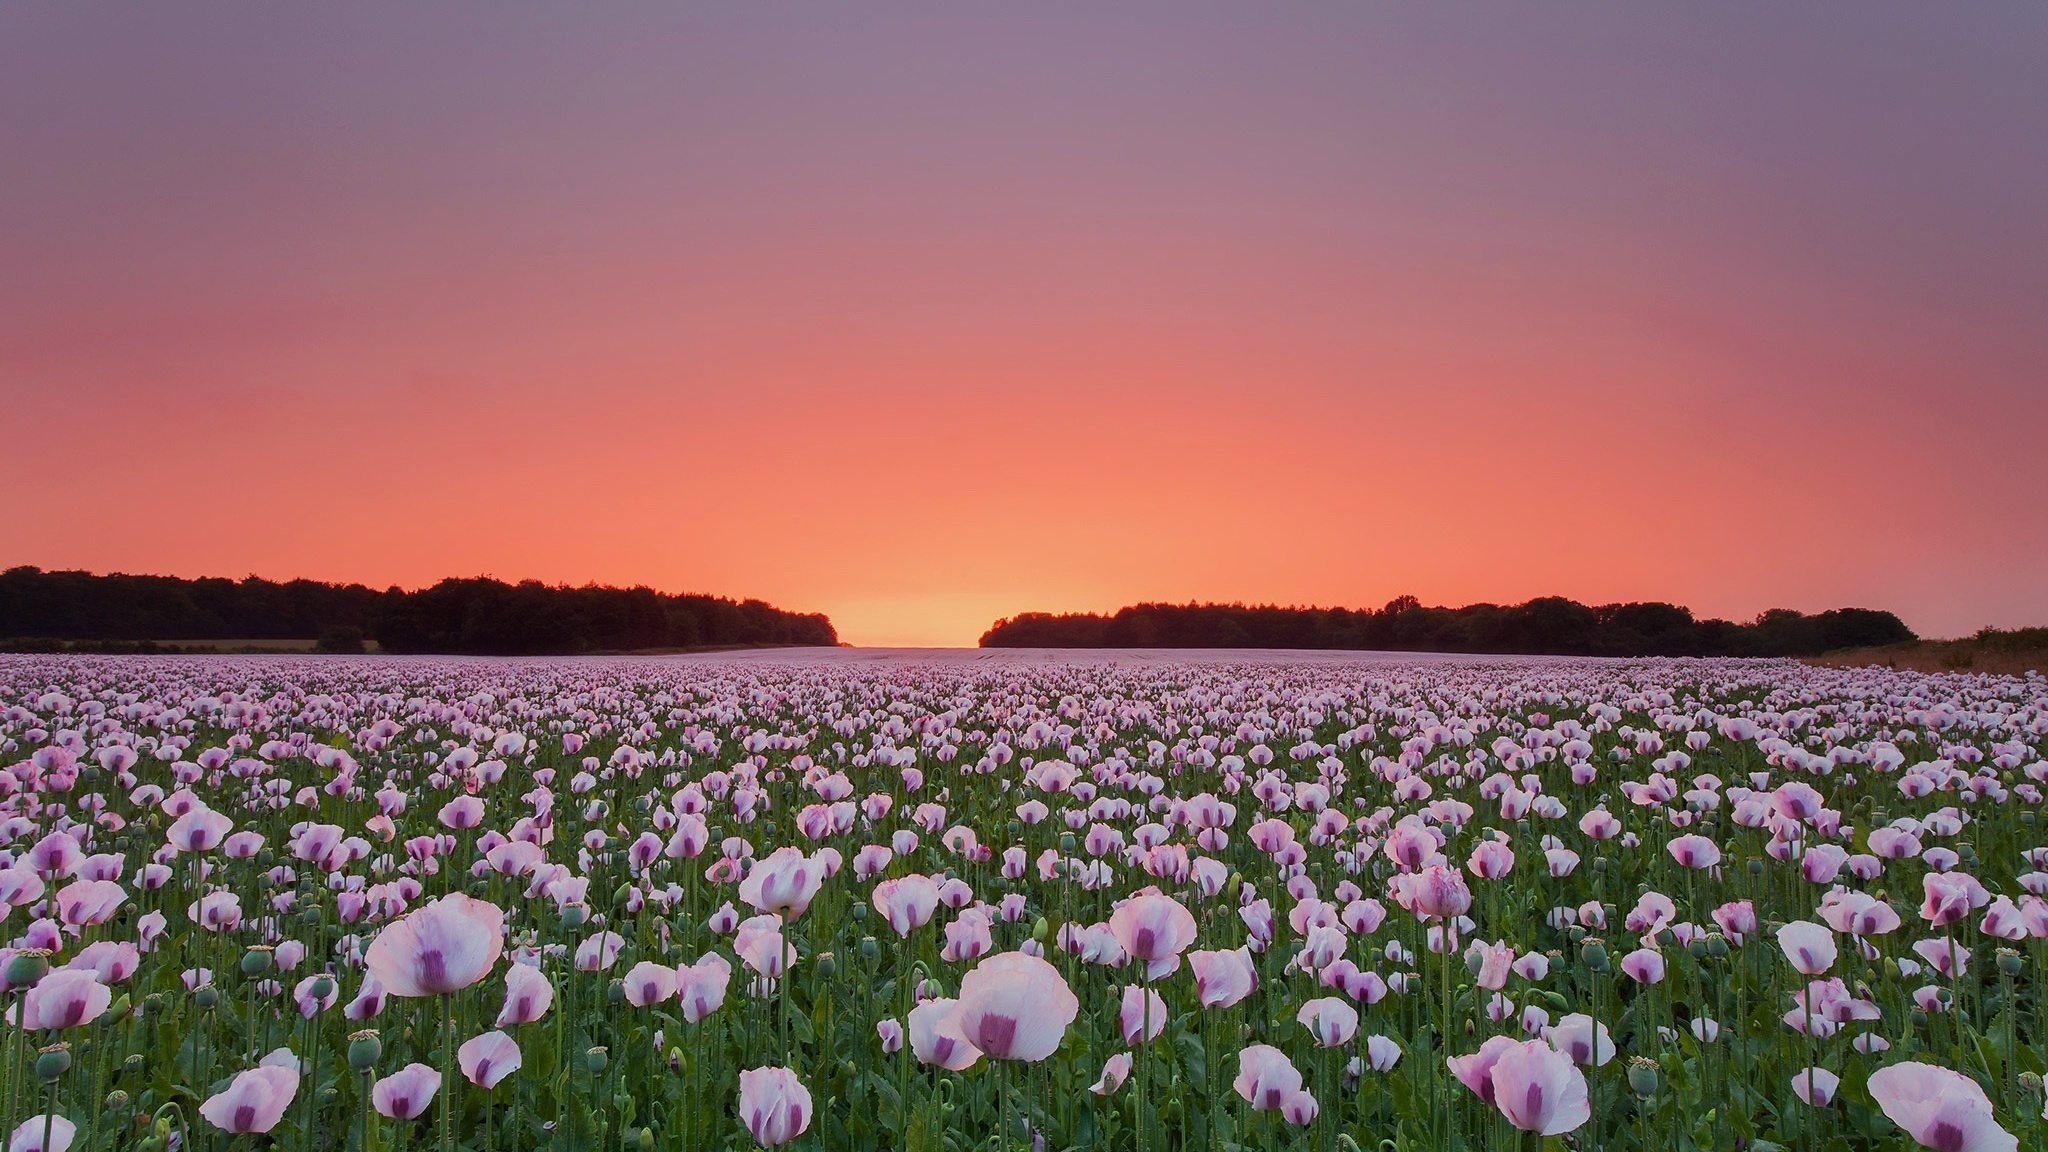 White Poppy, Field of flowers, HD 4K wallpapers, Scenic beauty, 2050x1160 HD Desktop